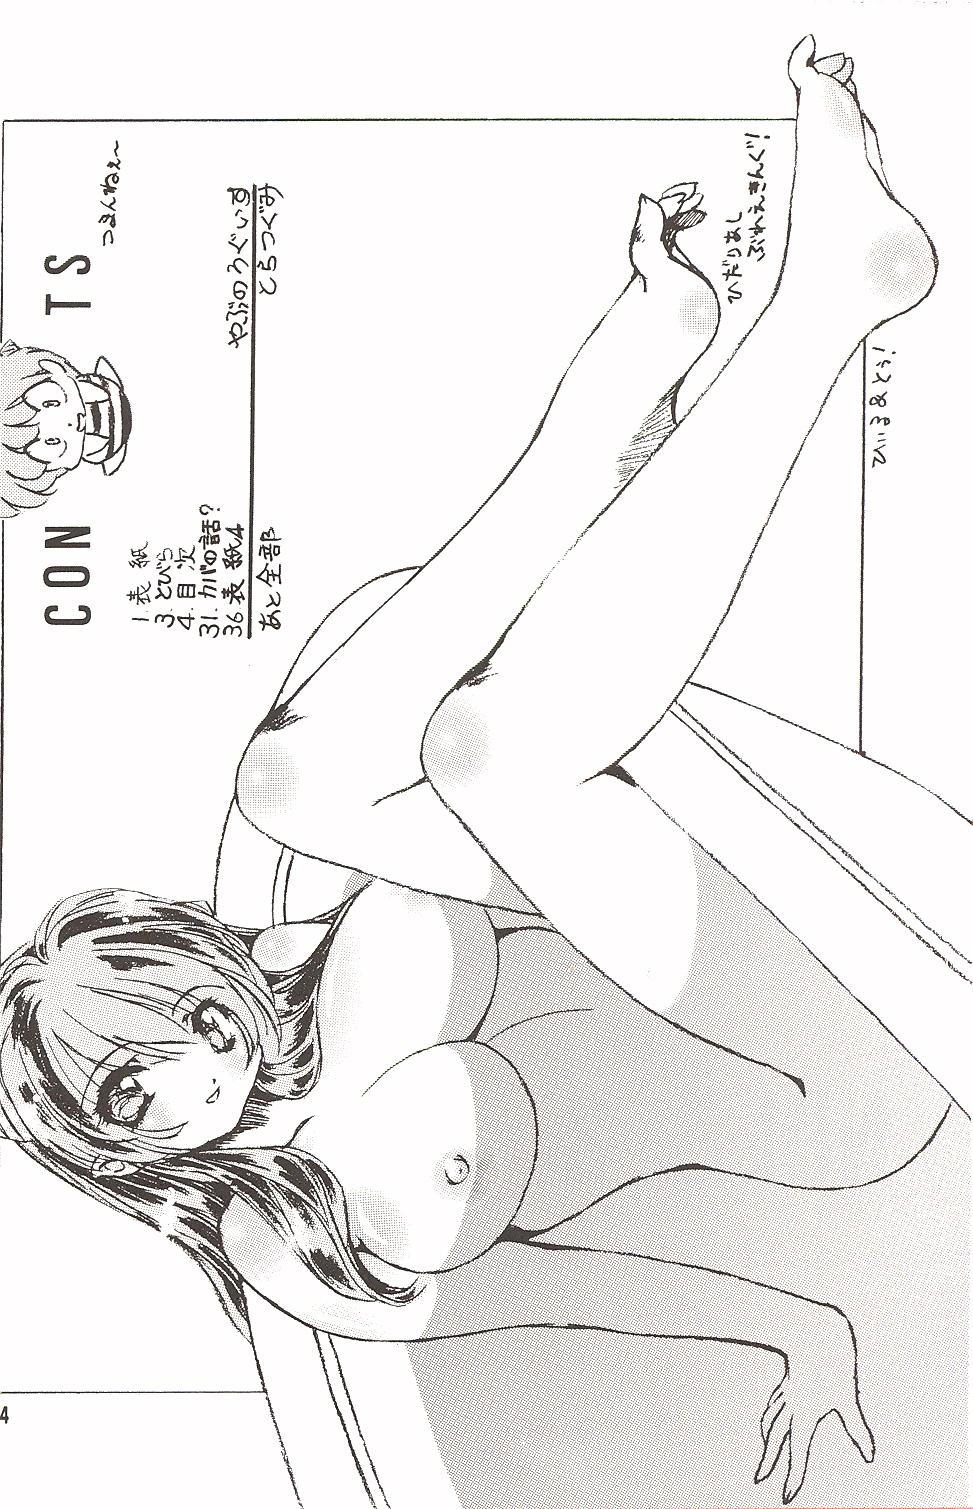 Comendo Naked Dream Lunatic Volume 3 - Urusei yatsura Body Massage - Picture 3